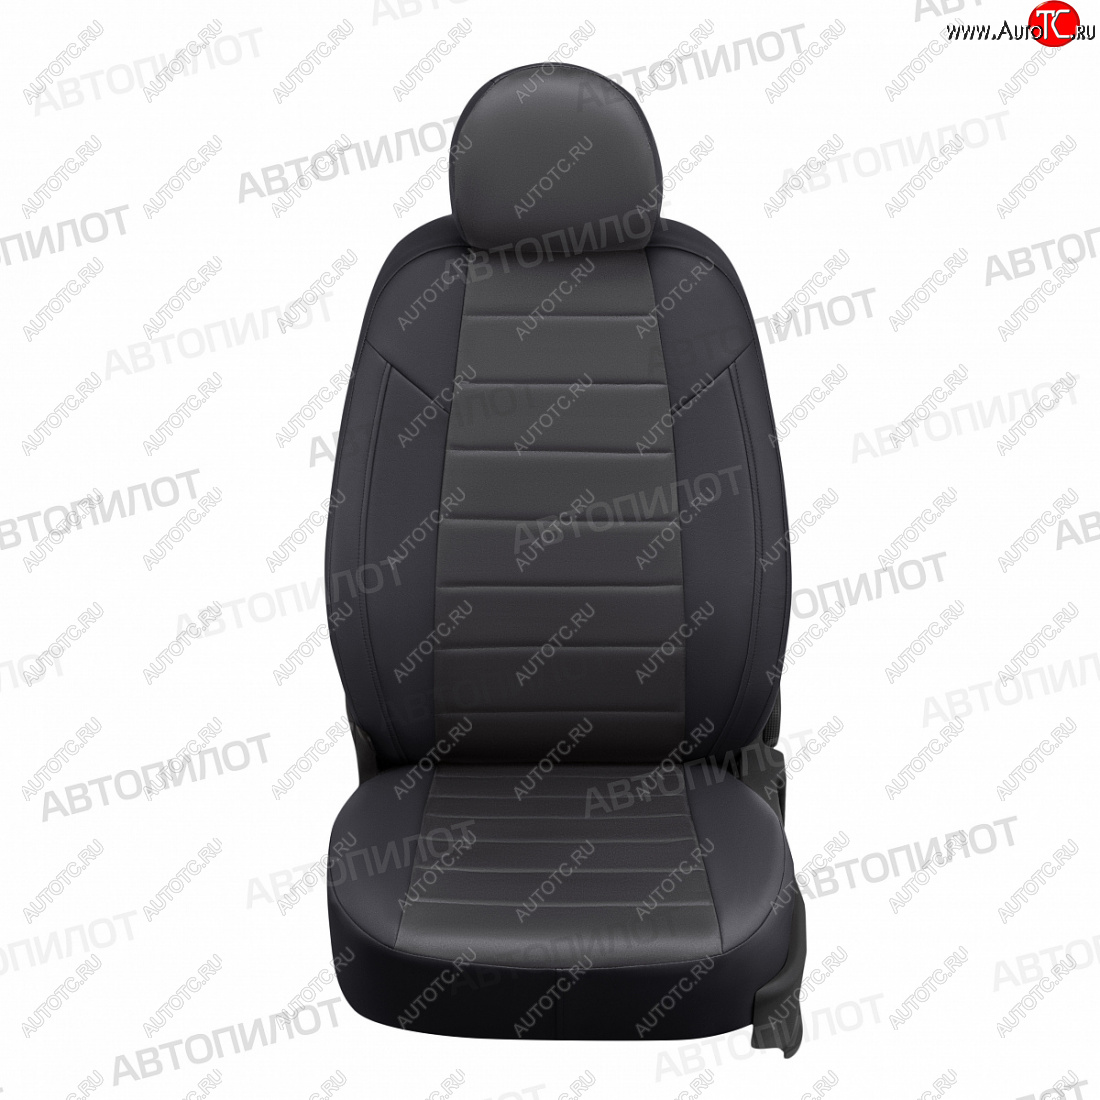 13 449 р. Чехлы сидений (экокожа/алькантара, сплошное заднее сиденье) Автопилот  Hyundai Getz  TB (2002-2010) (черный/темно-серый)